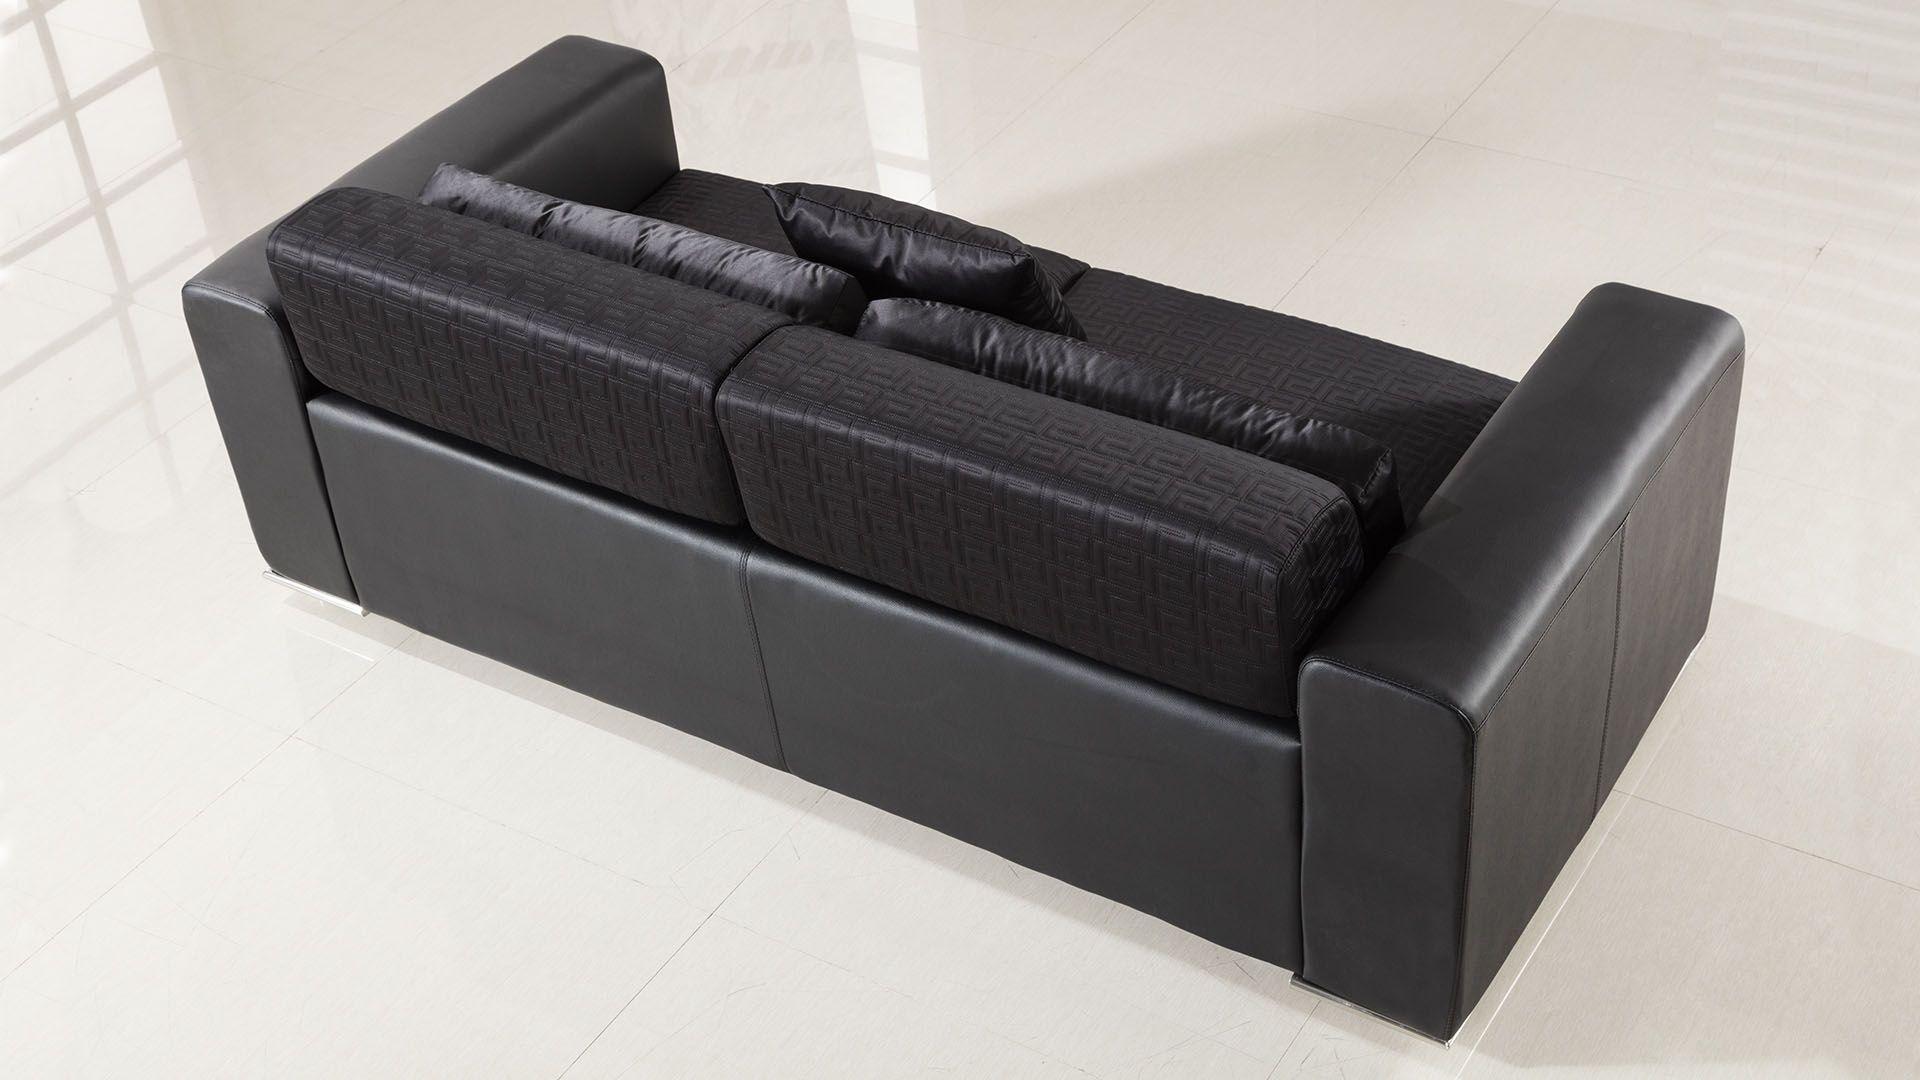 

    
AE223-BK-SF American Eagle Furniture Sofa
